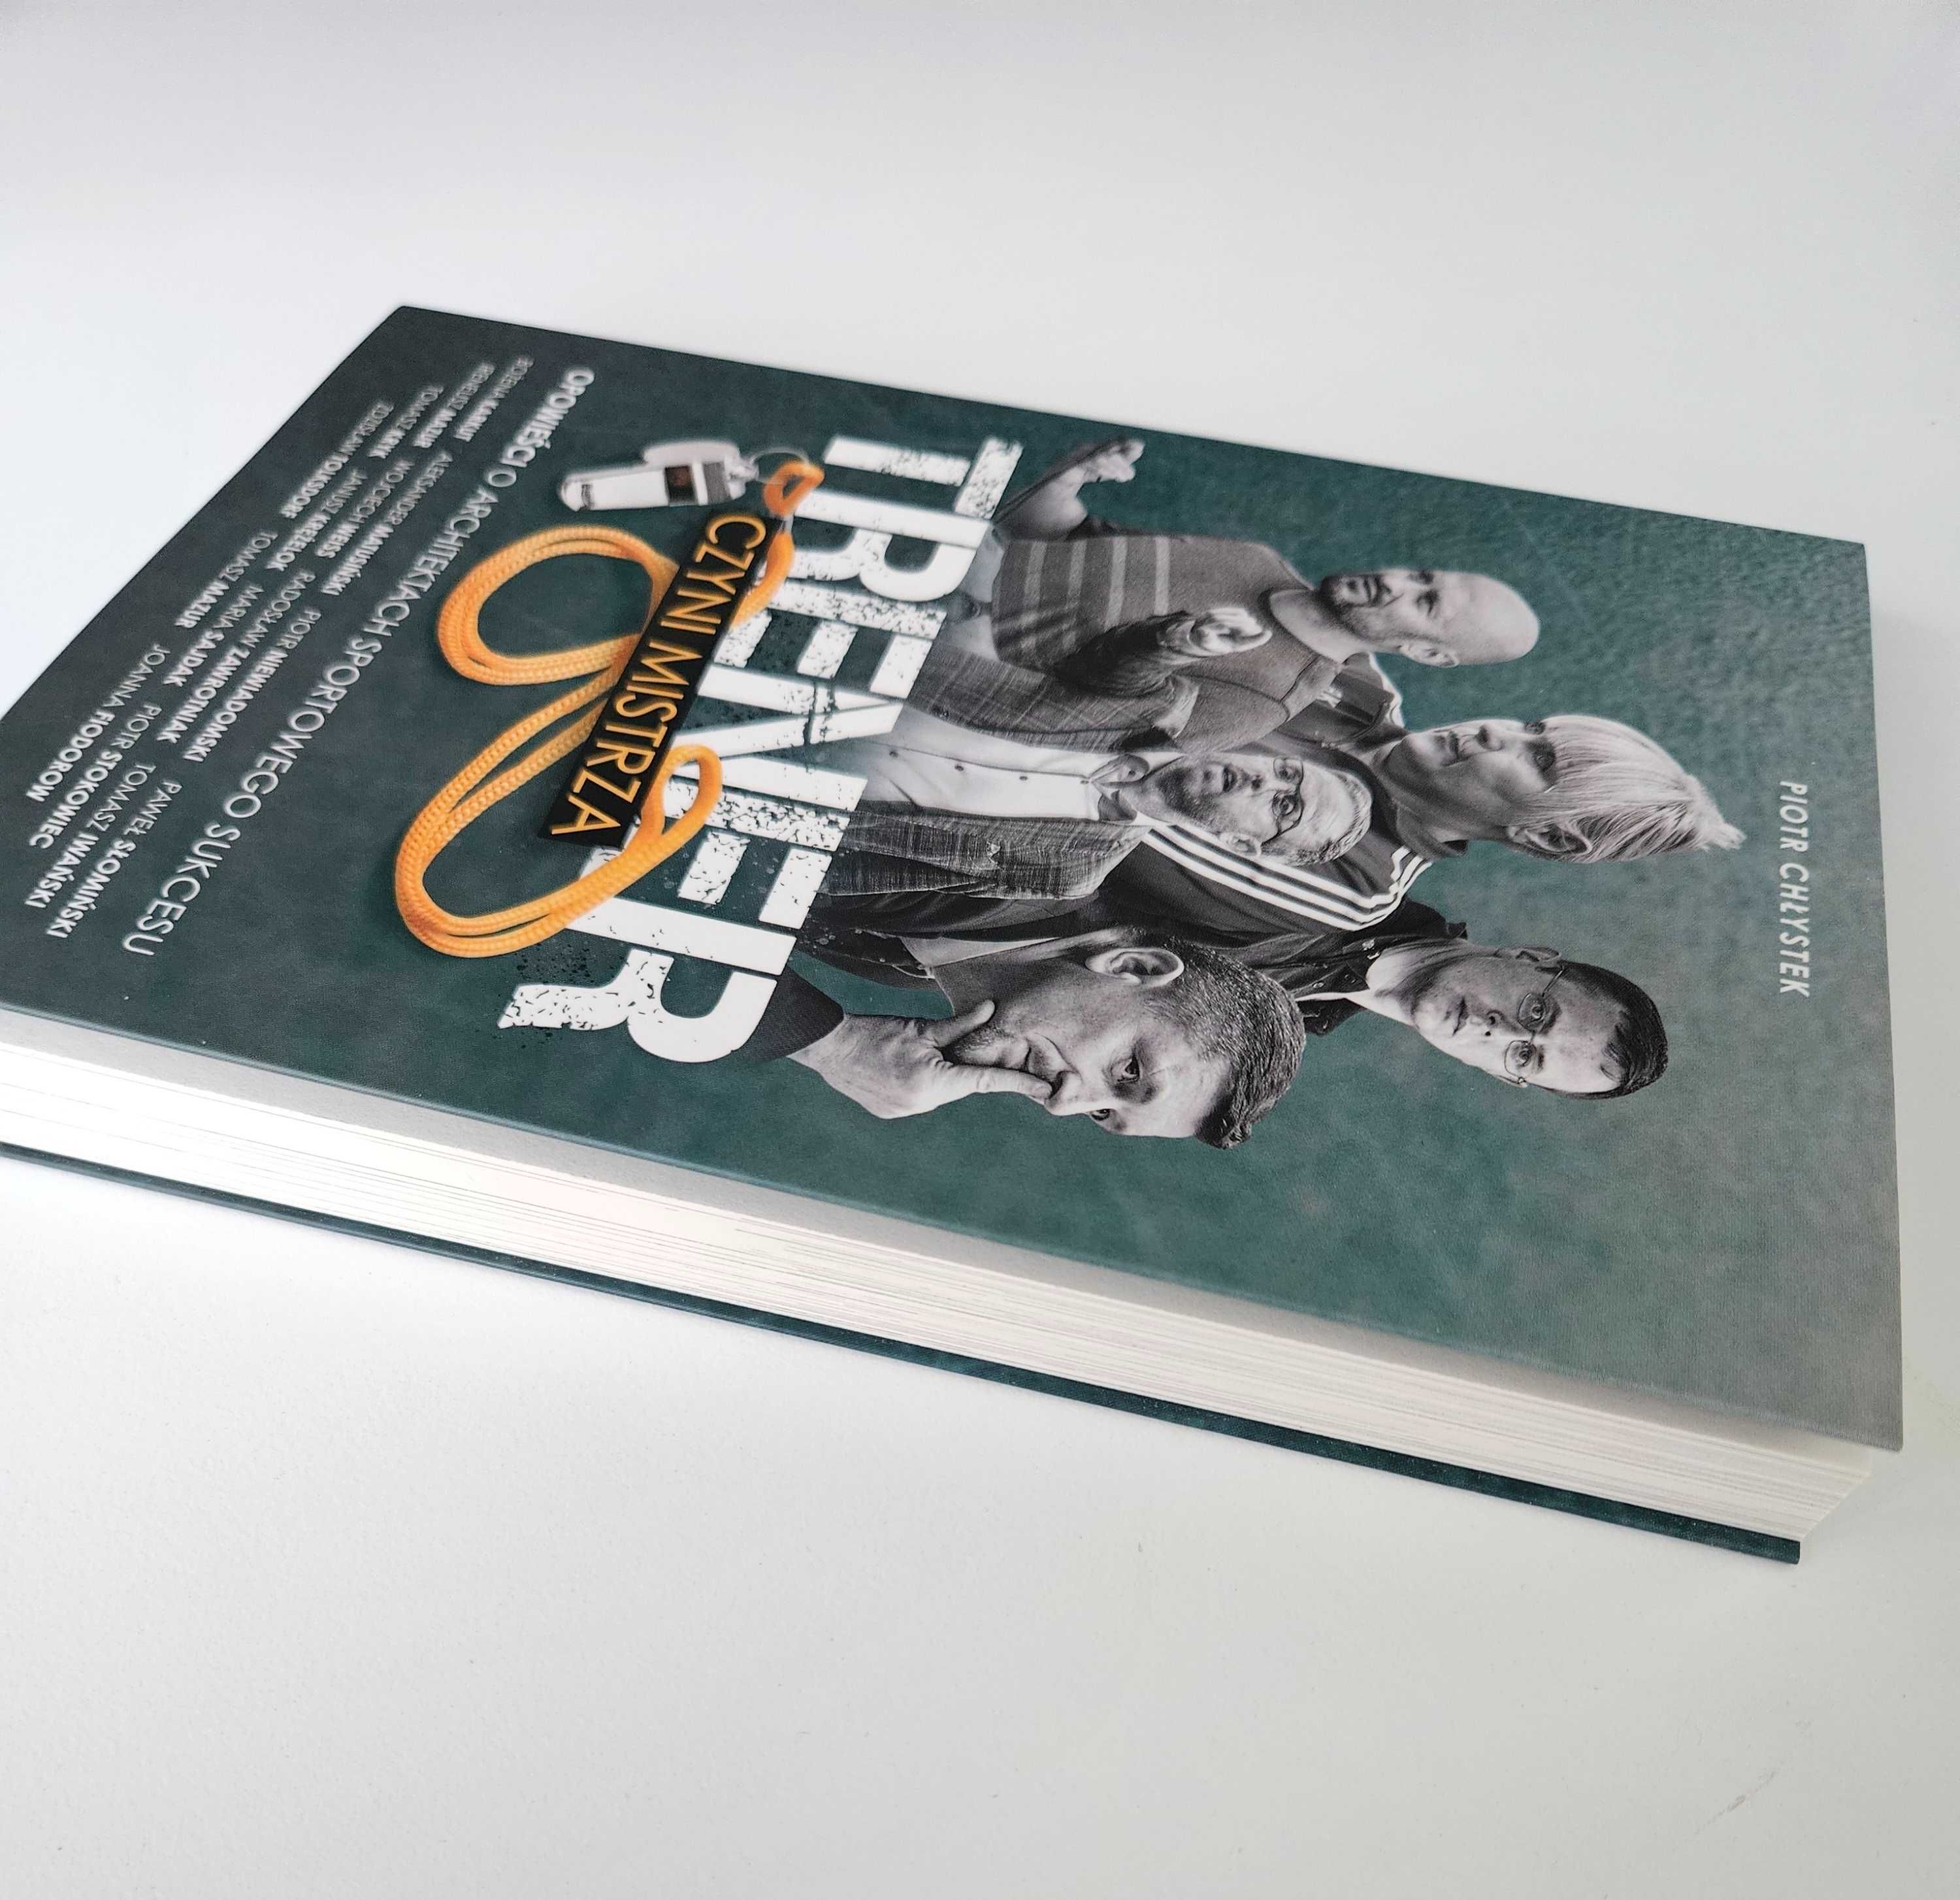 Nowa książka "Trener czyni mistrza" | Piotr Chłystek